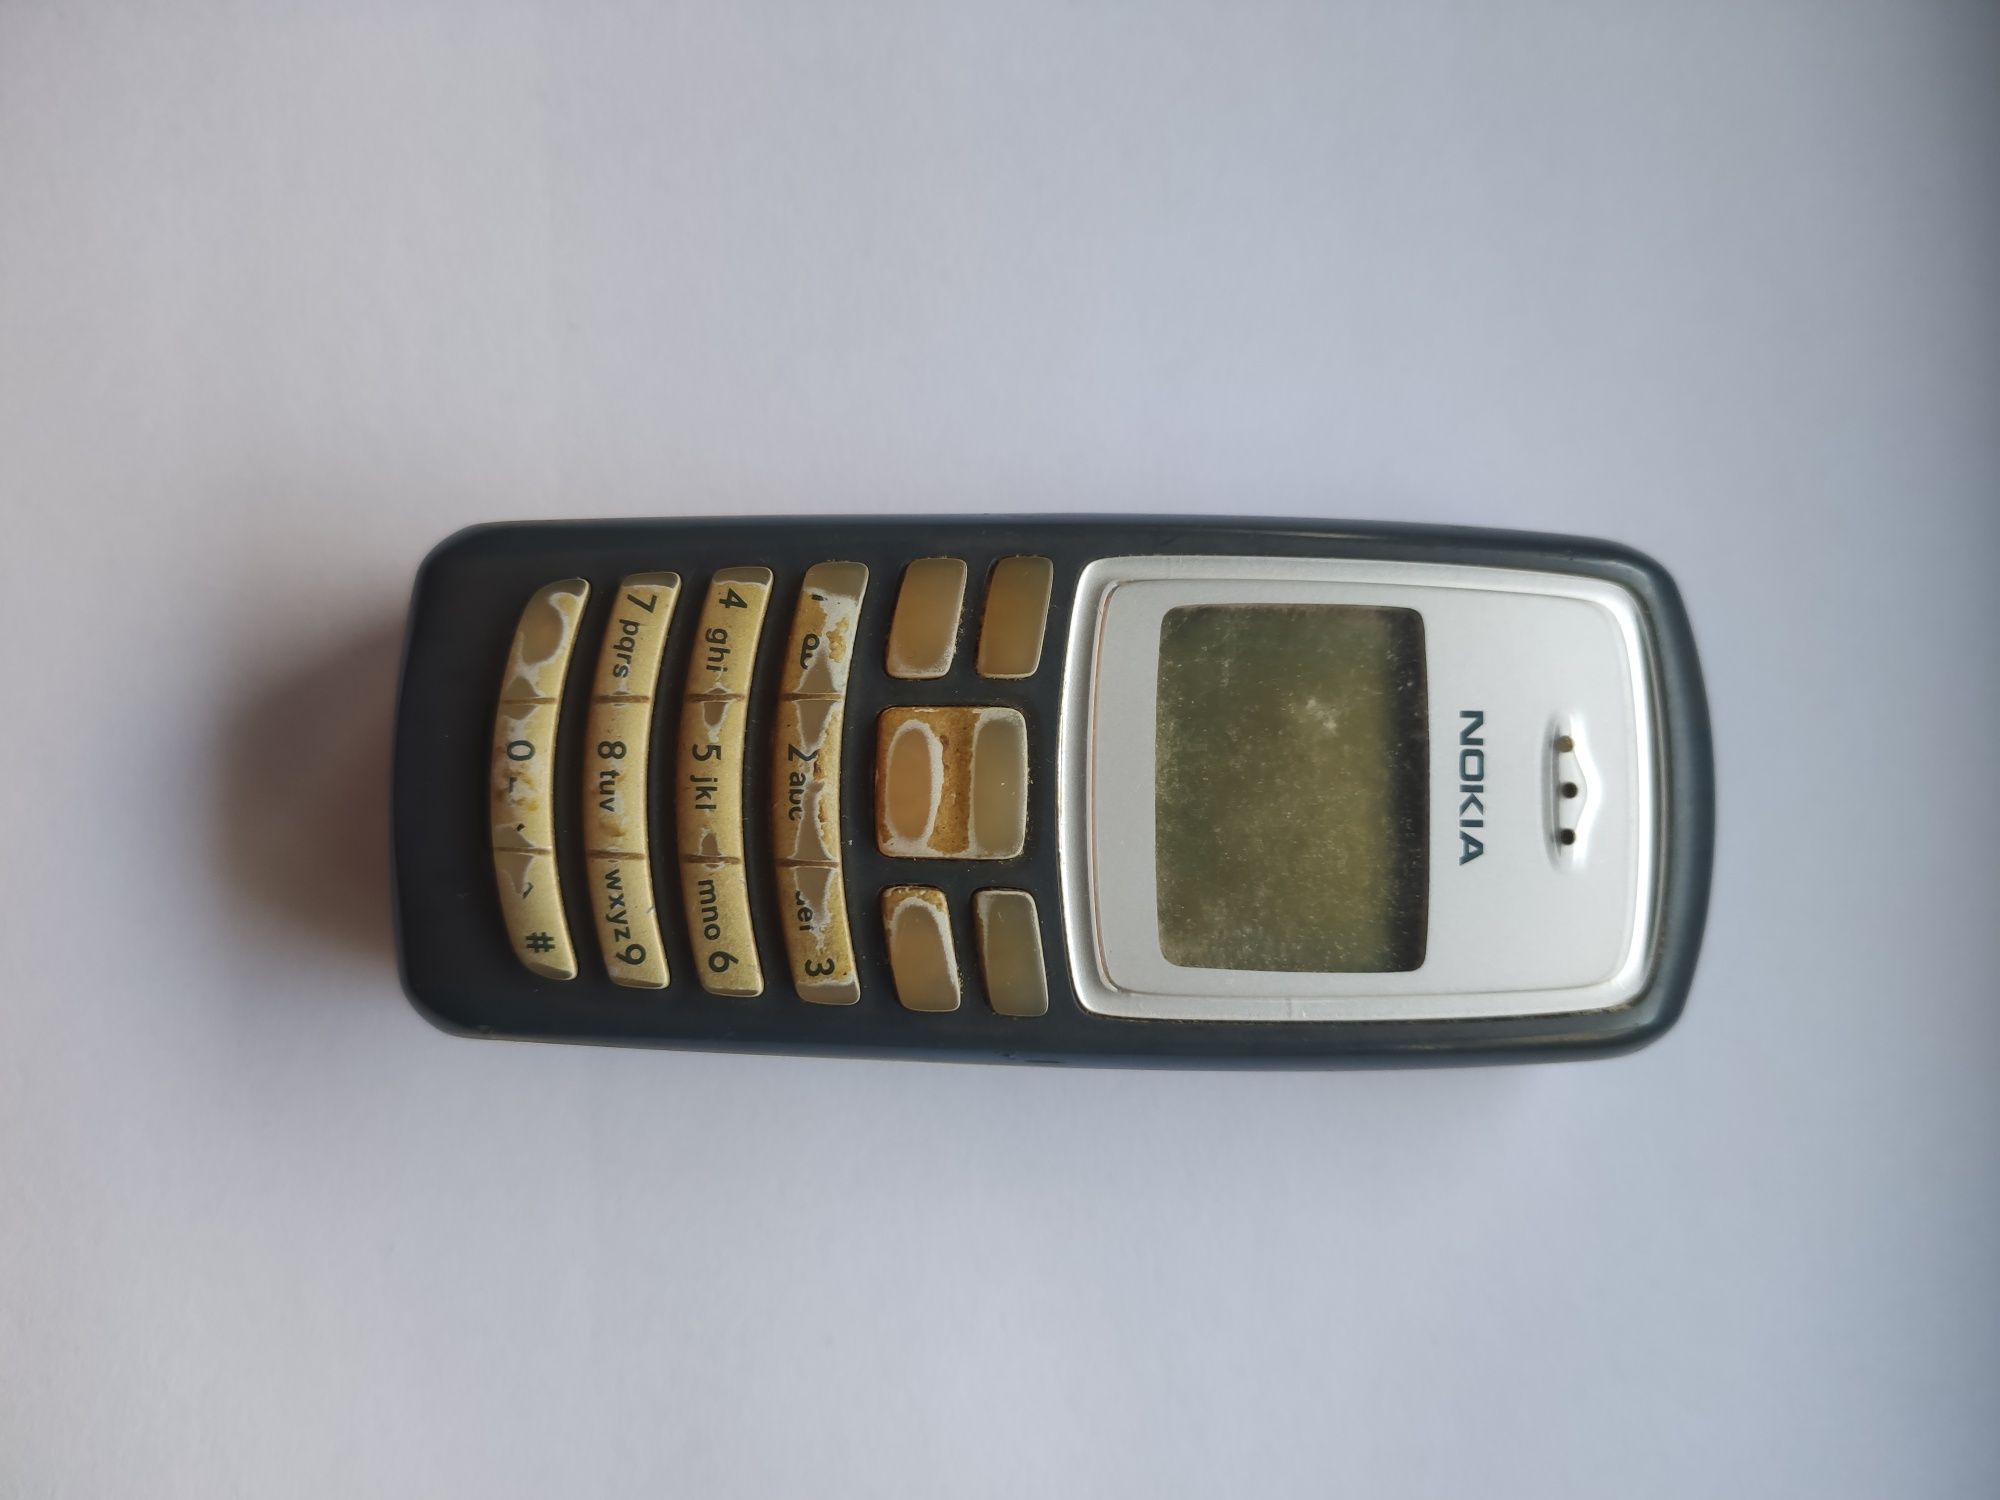 Conjunto de telemóveis antigos da Nokia e LG (ler descrição)